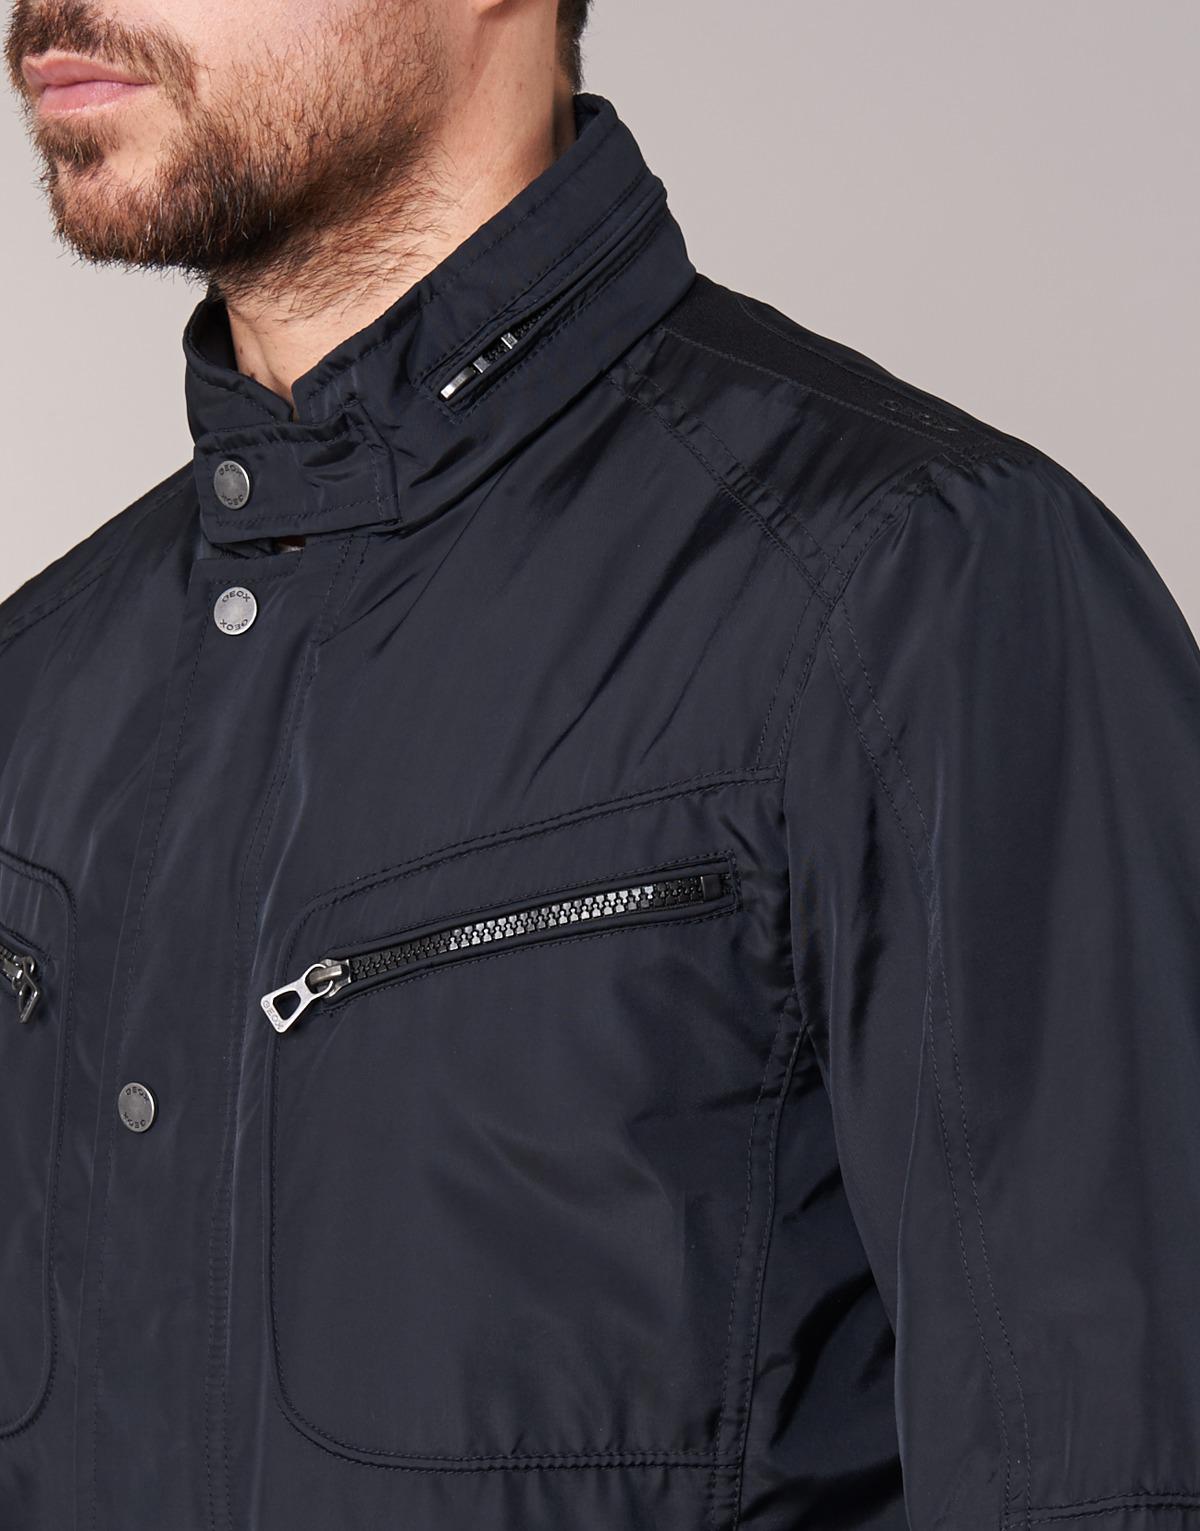 Geox Yeloe Men's Jacket In Black for Men - Lyst